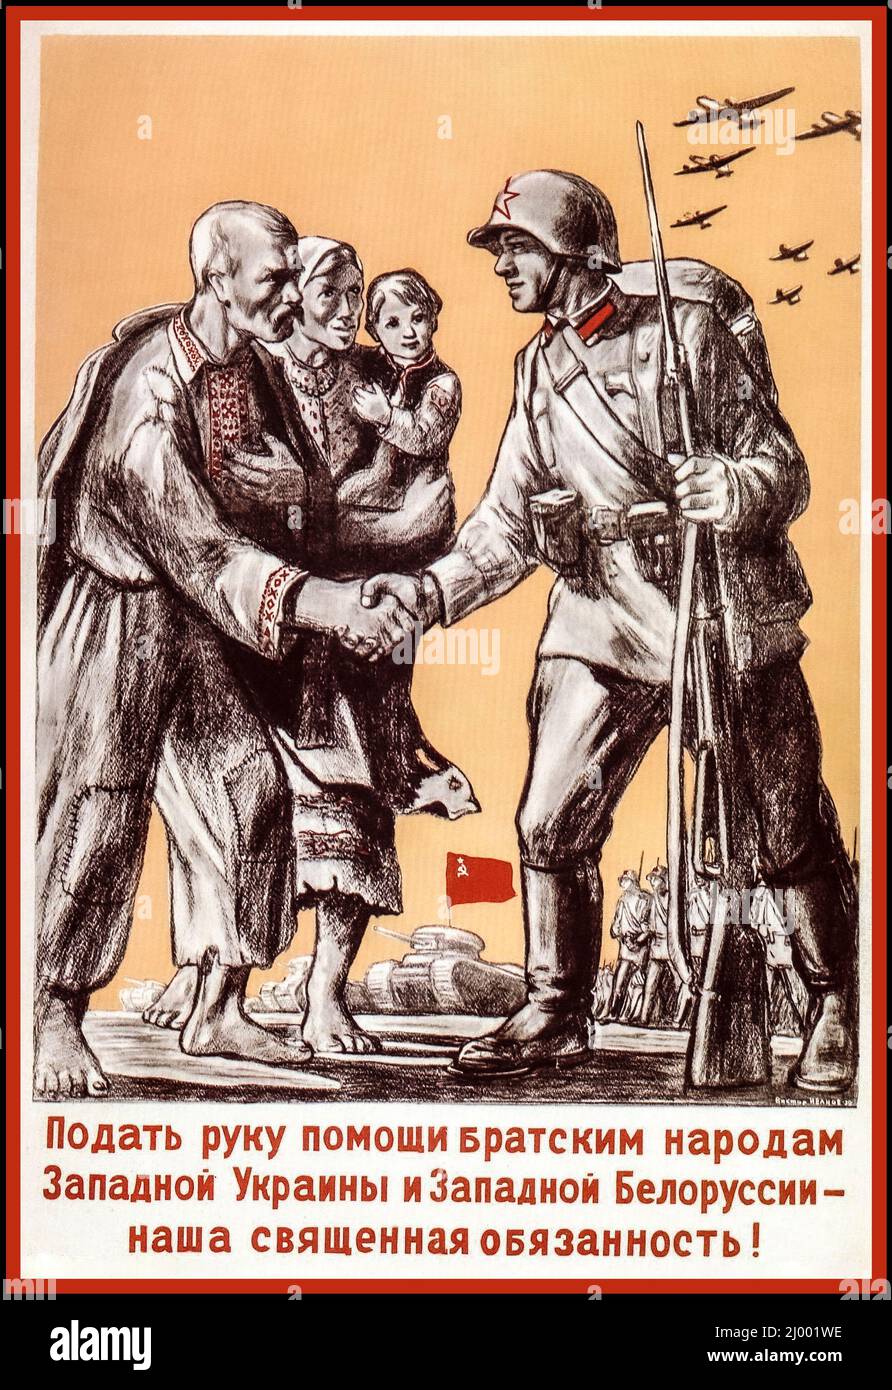 Vintage 1939 WW2 Russian Soviet Poster 'dare una mano volenterosa alle nazioni fraterne dell'Ucraina occidentale e della Bielorussia occidentale - è il nostro sacro dovere! '- Unione Sovietica, seconda guerra mondiale del 1939 Foto Stock